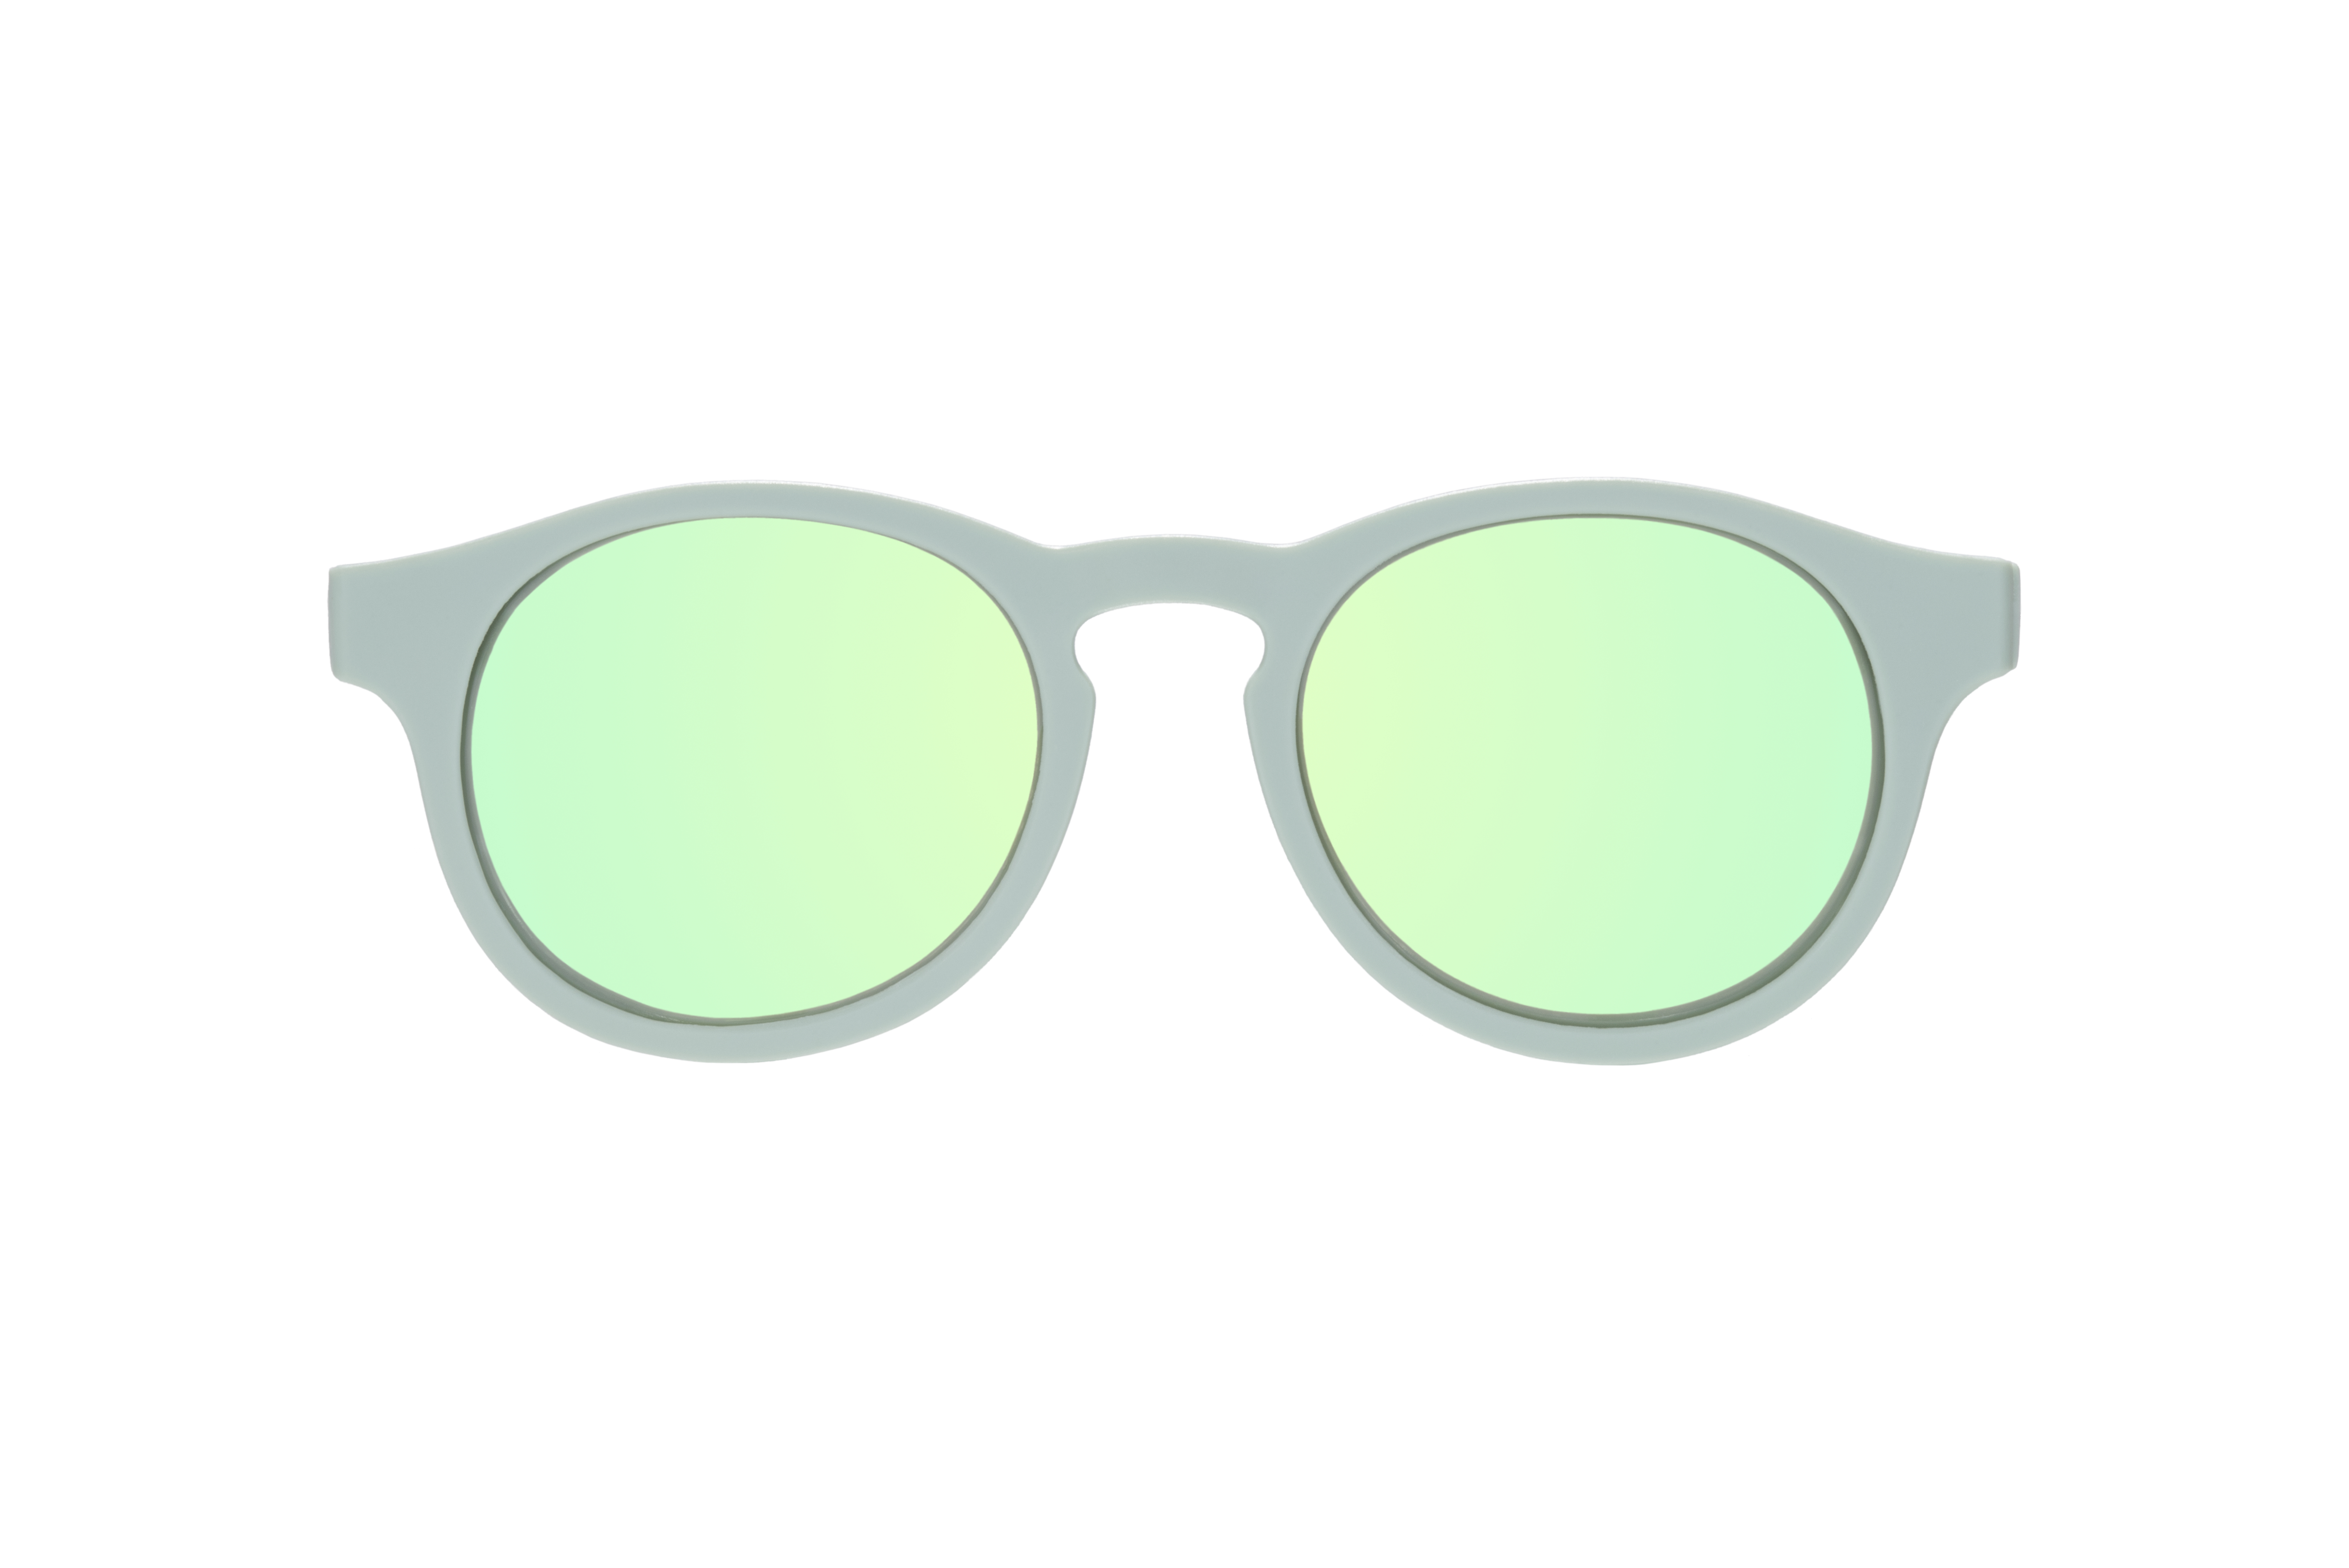 Babiators Polarized Keyhole, Seafoam Blue, polarizační sluneční brýle, modrá mořská pěna, 6+